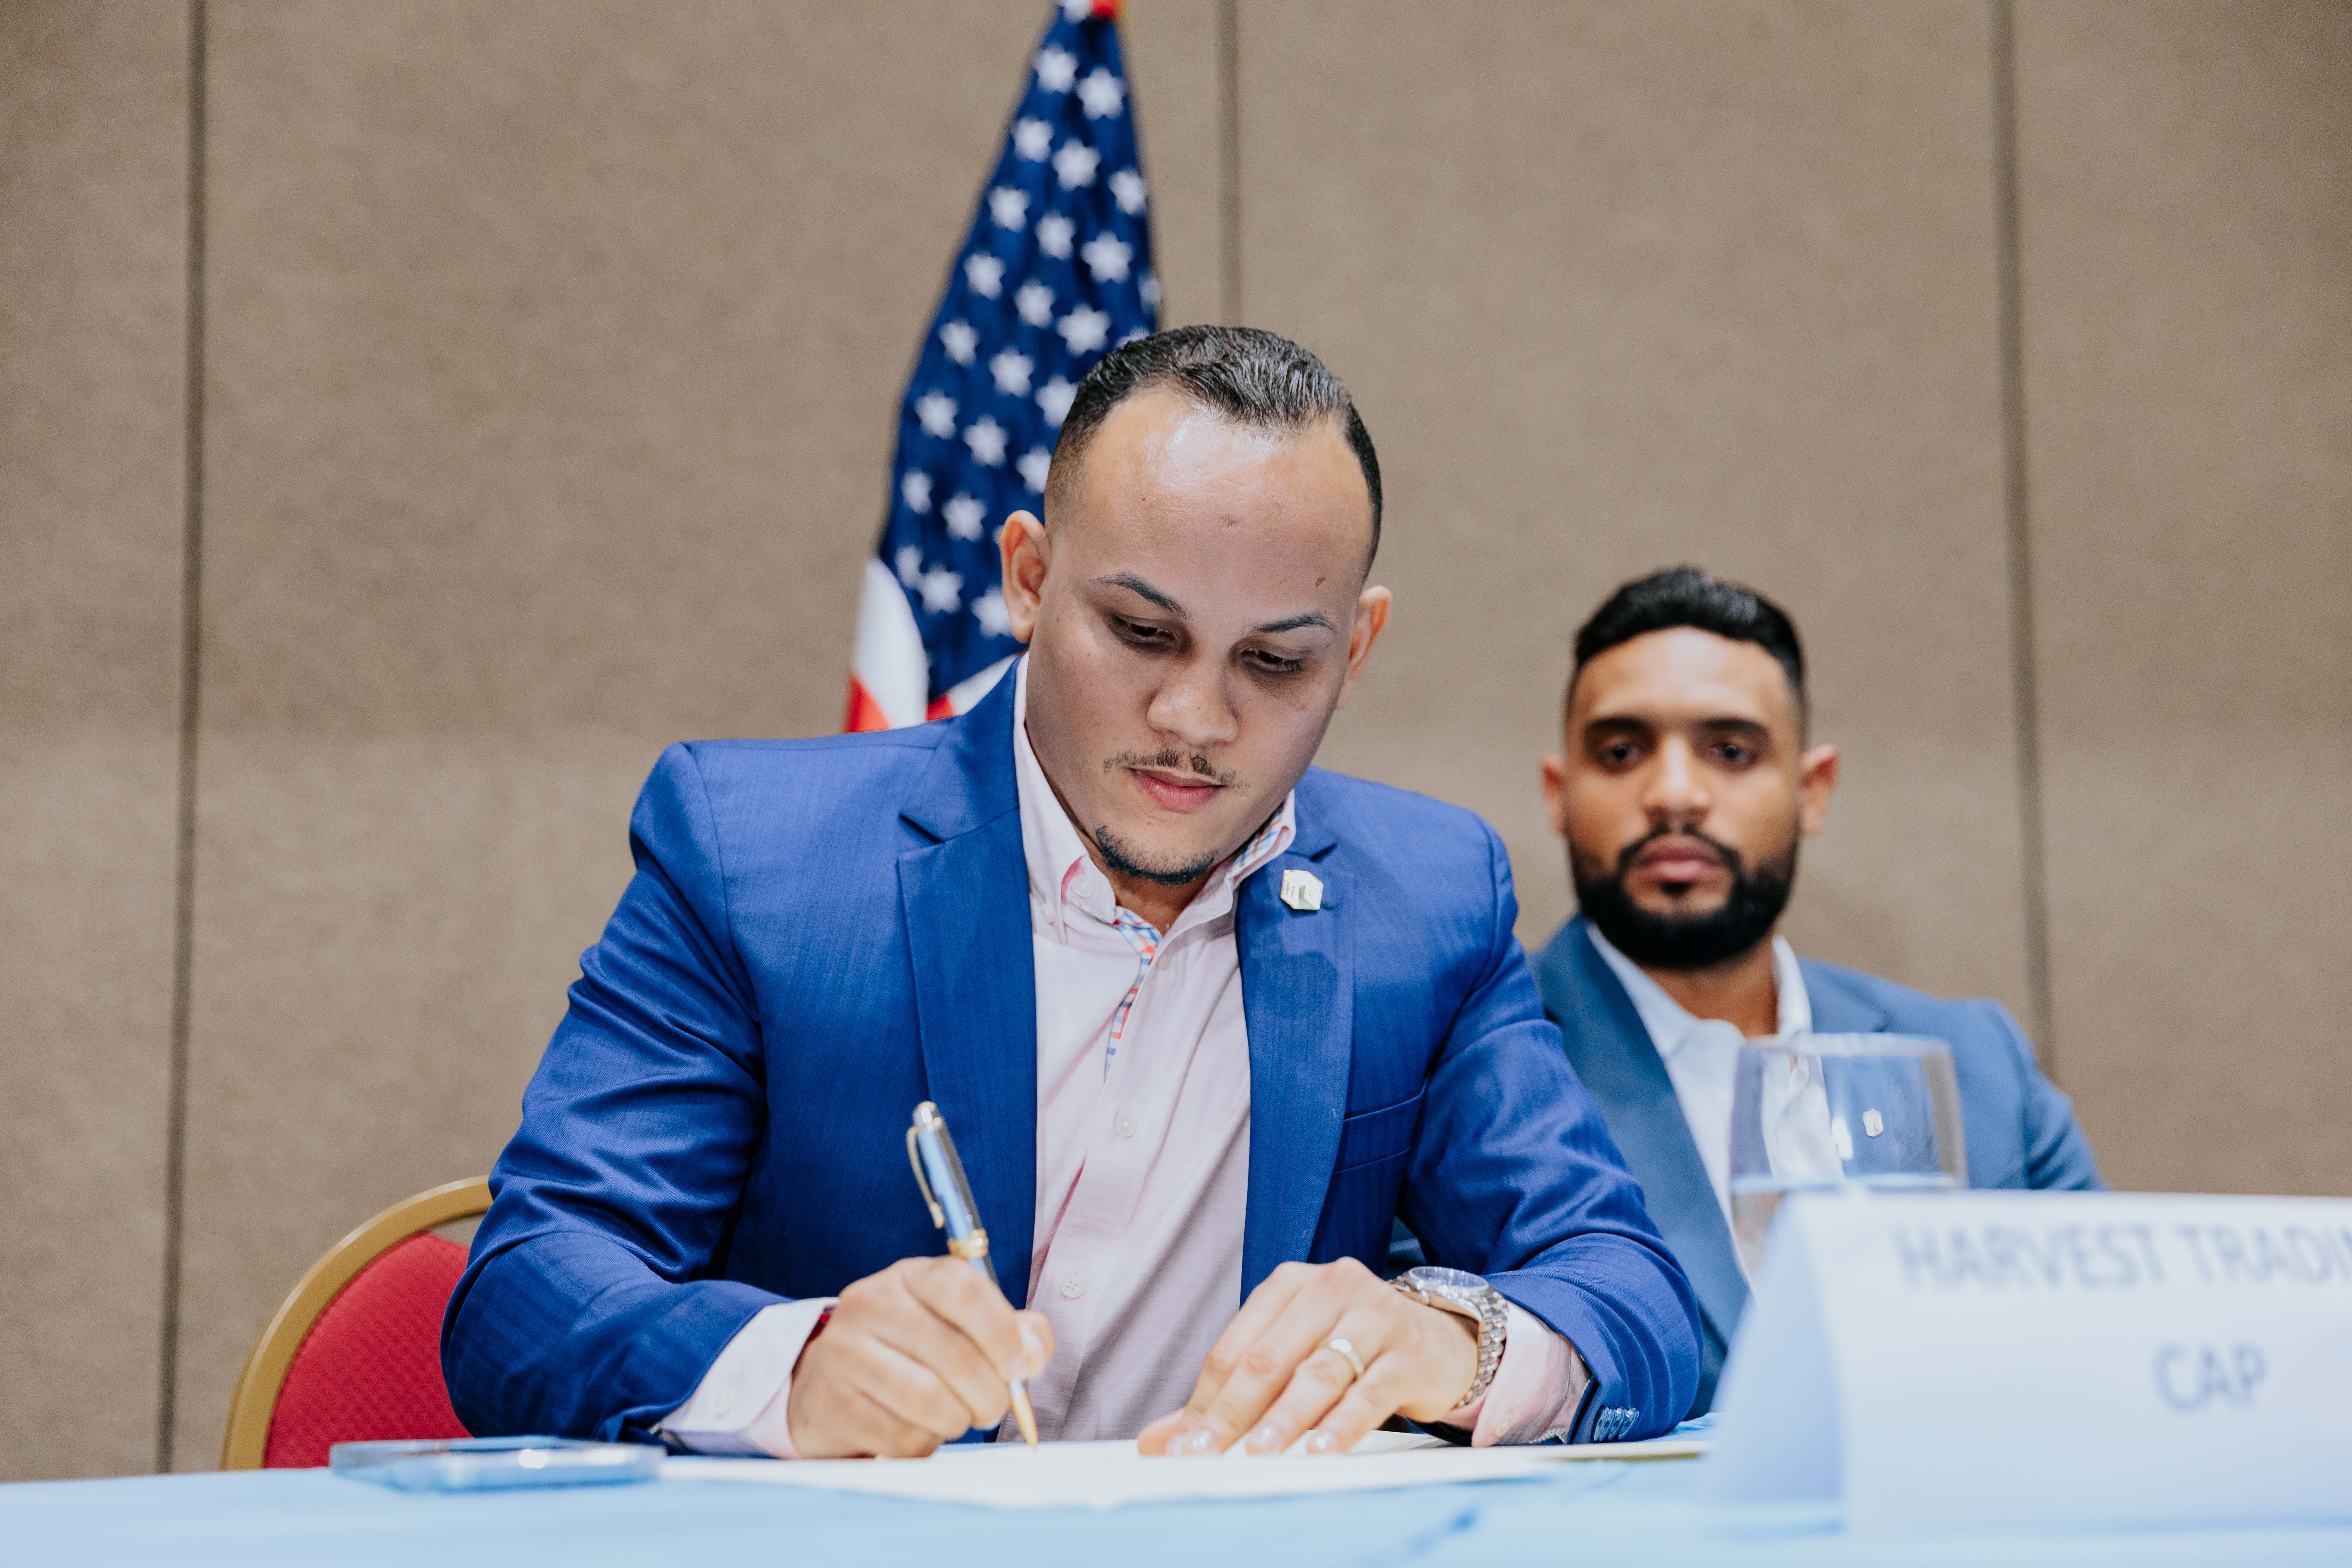 Jairo Gonzalez unterzeichnet die bilaterale Vereinbarung, die das Leben vieler Menschen verändern wird.